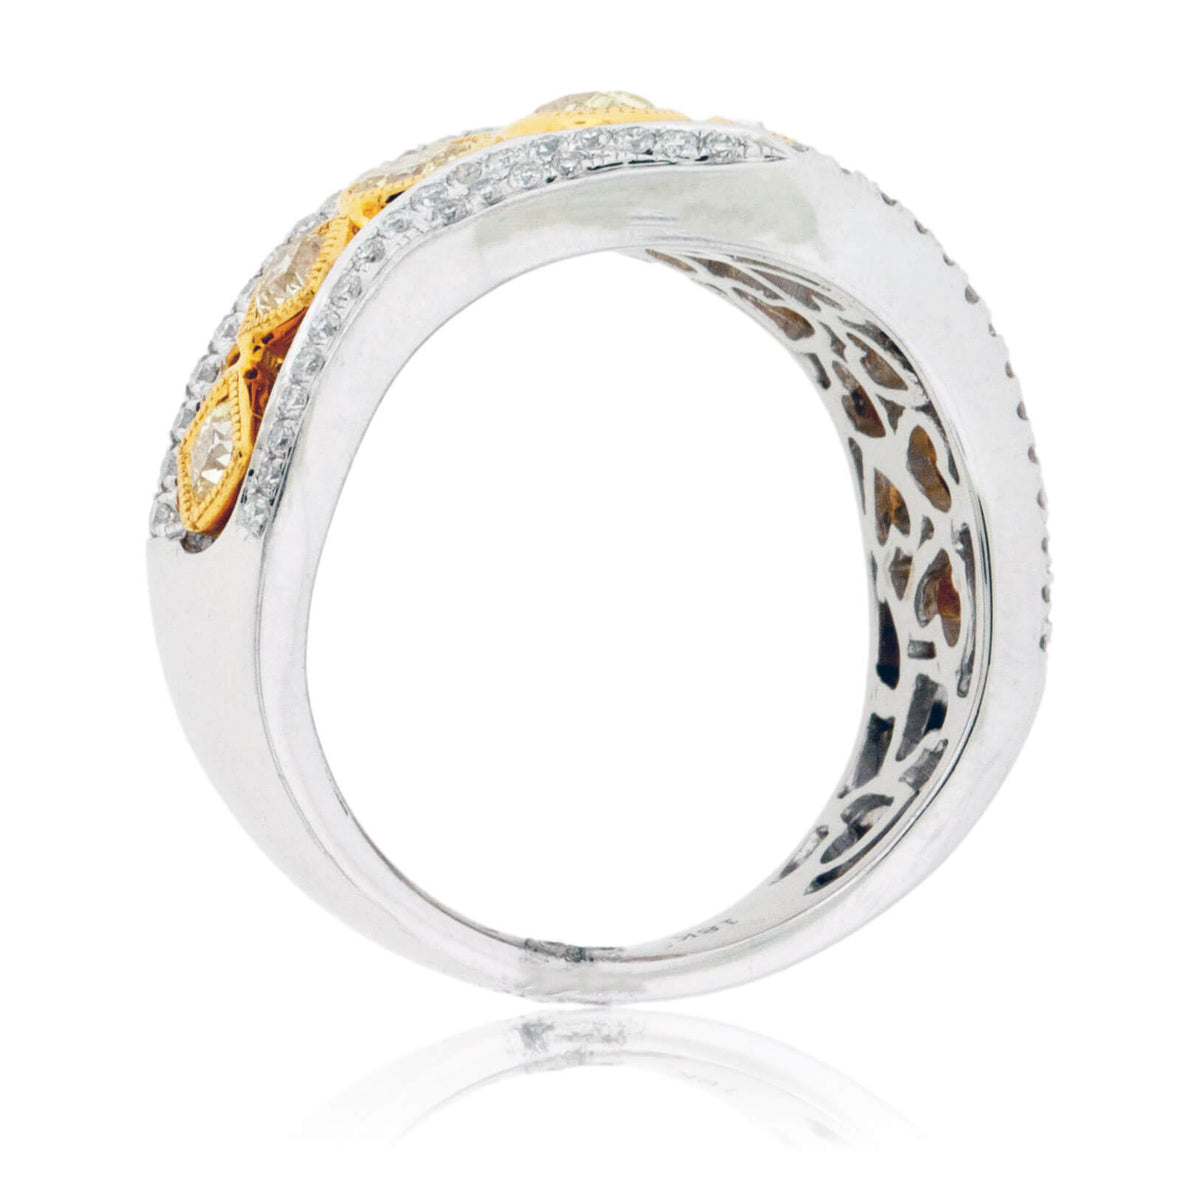 Mixed Cut Yellow Diamonds & Diamond Fashion Ring - Park City Jewelers